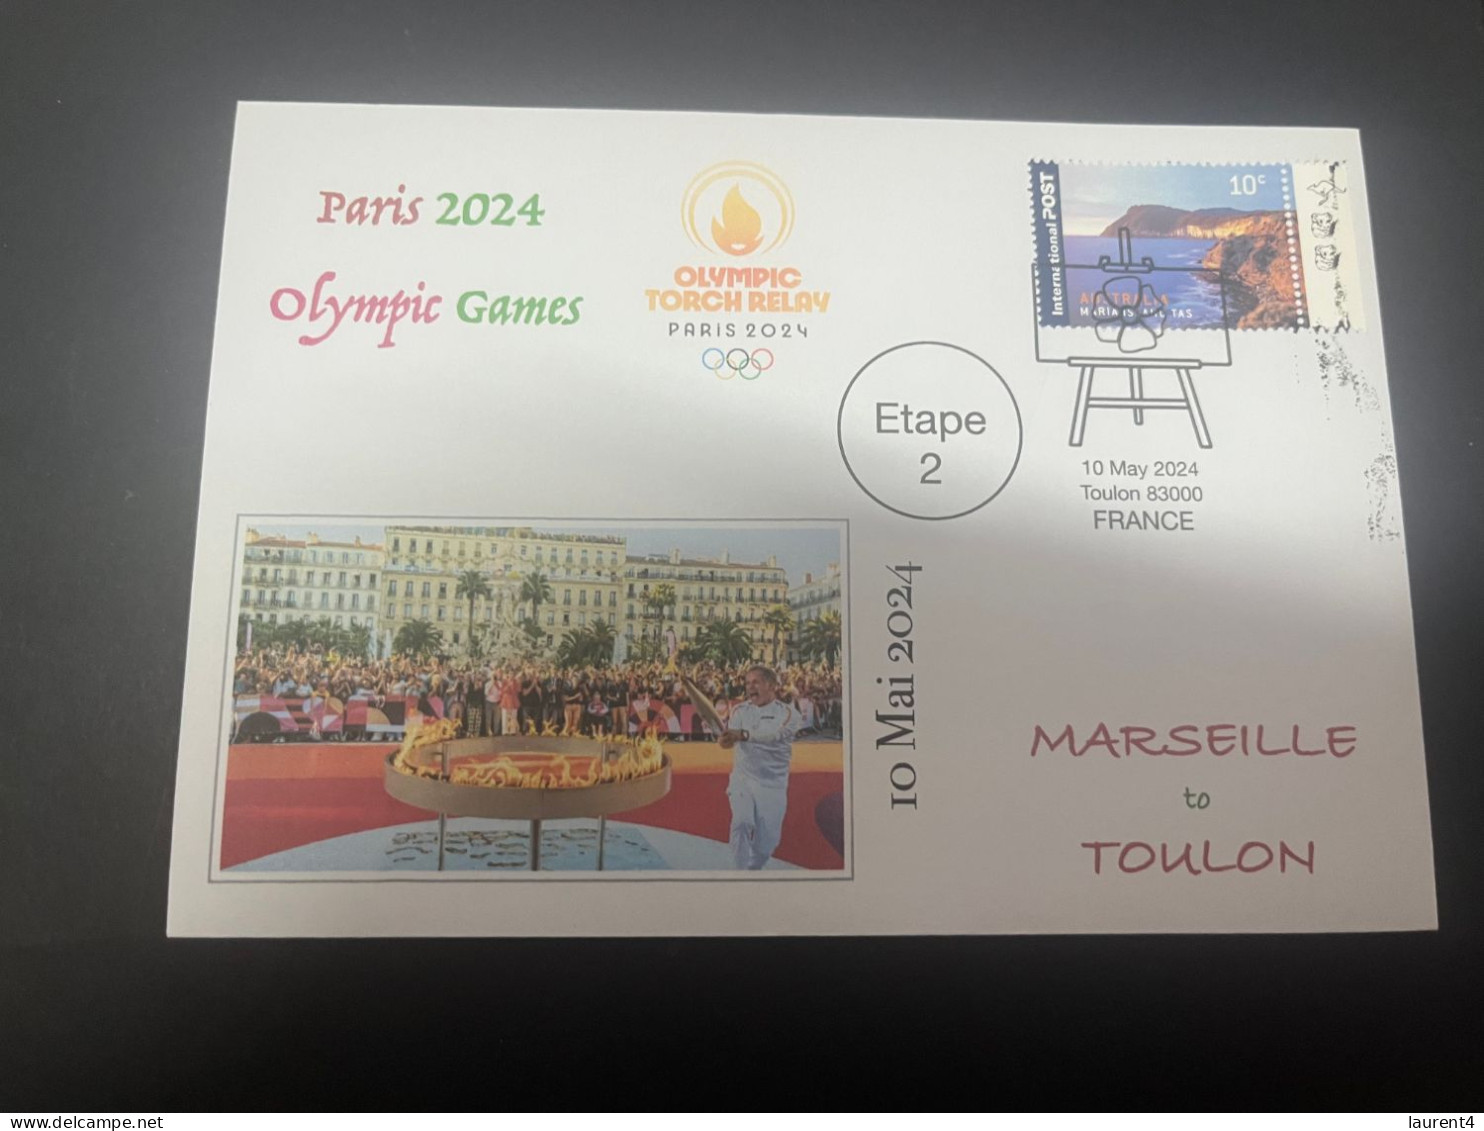 11-5-2024 (4 Z 42) Paris Olympic Games 2024 - Torch Relay (Etape 2) In Toulon (10-5-2024) With OZ Stamp - Eté 2024 : Paris